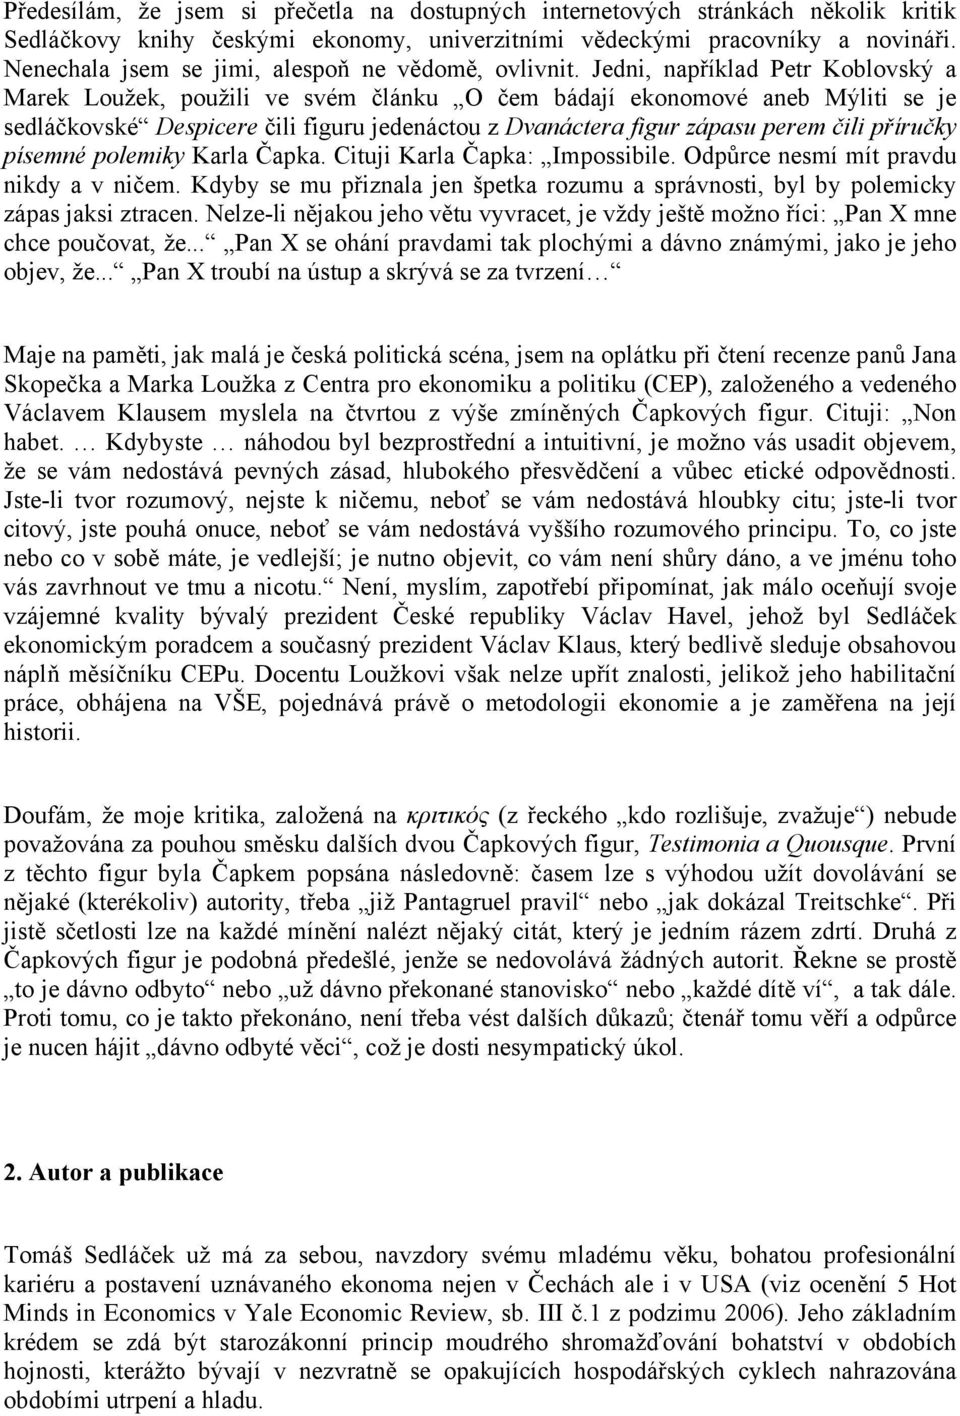 Recenze publikace Tomáše Sedláčka Ekonomie dobra a zla - PDF Free Download